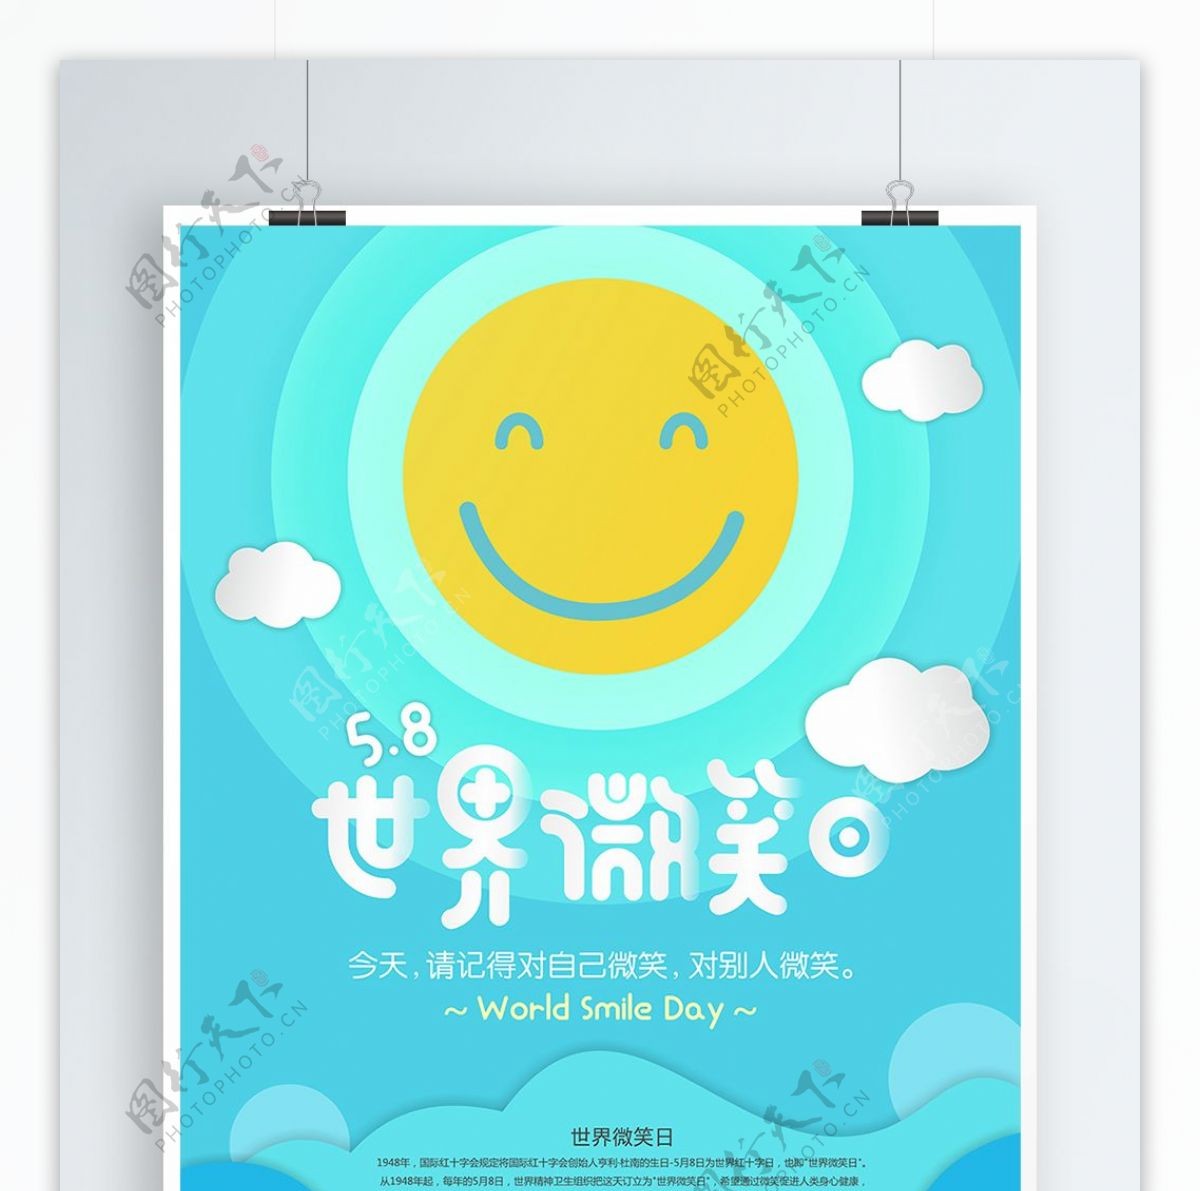 创意剪纸风格世界微笑日公益海报